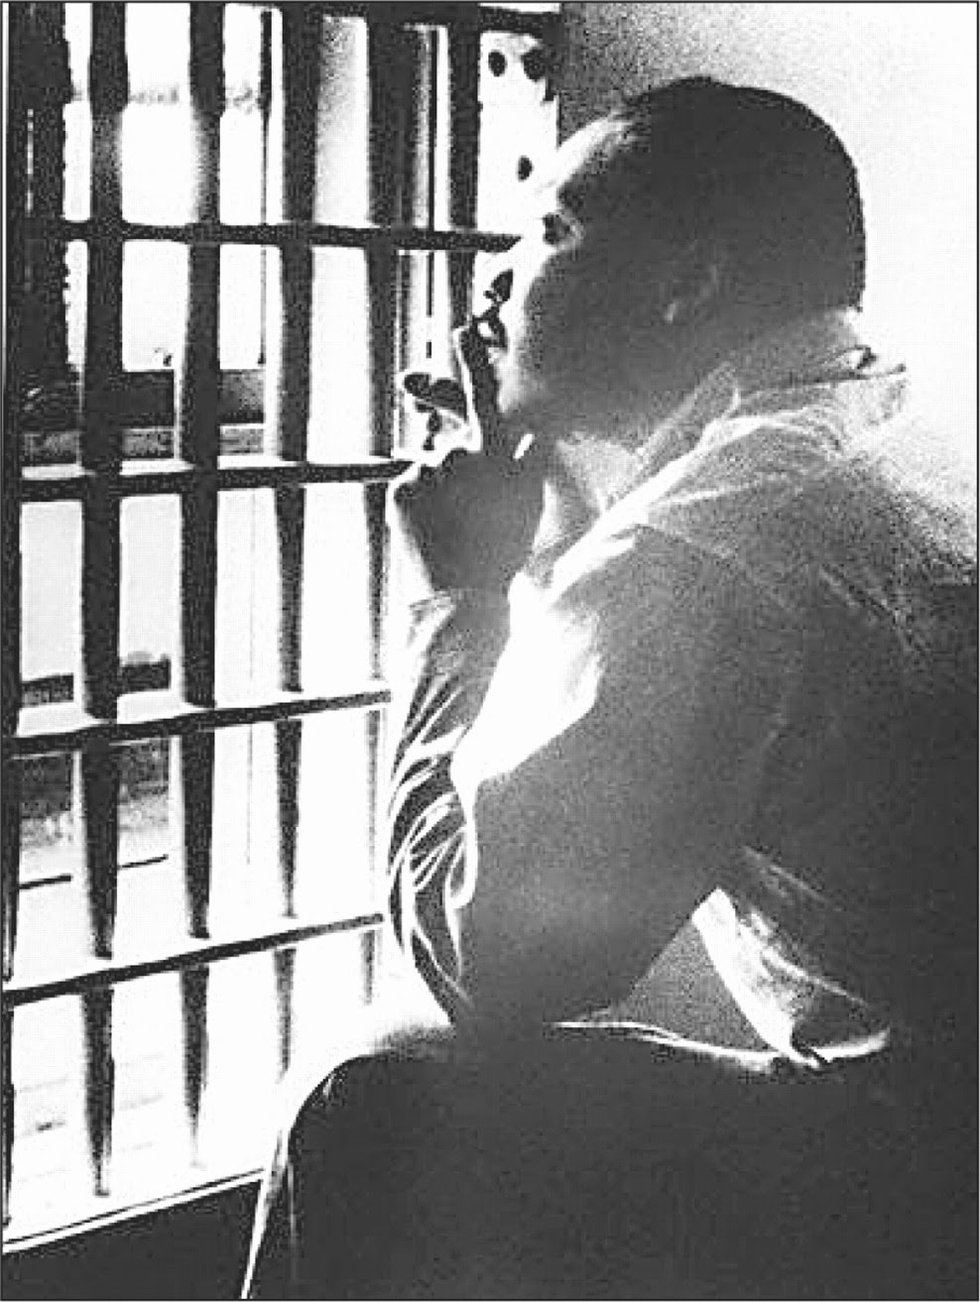 MLK in Jail